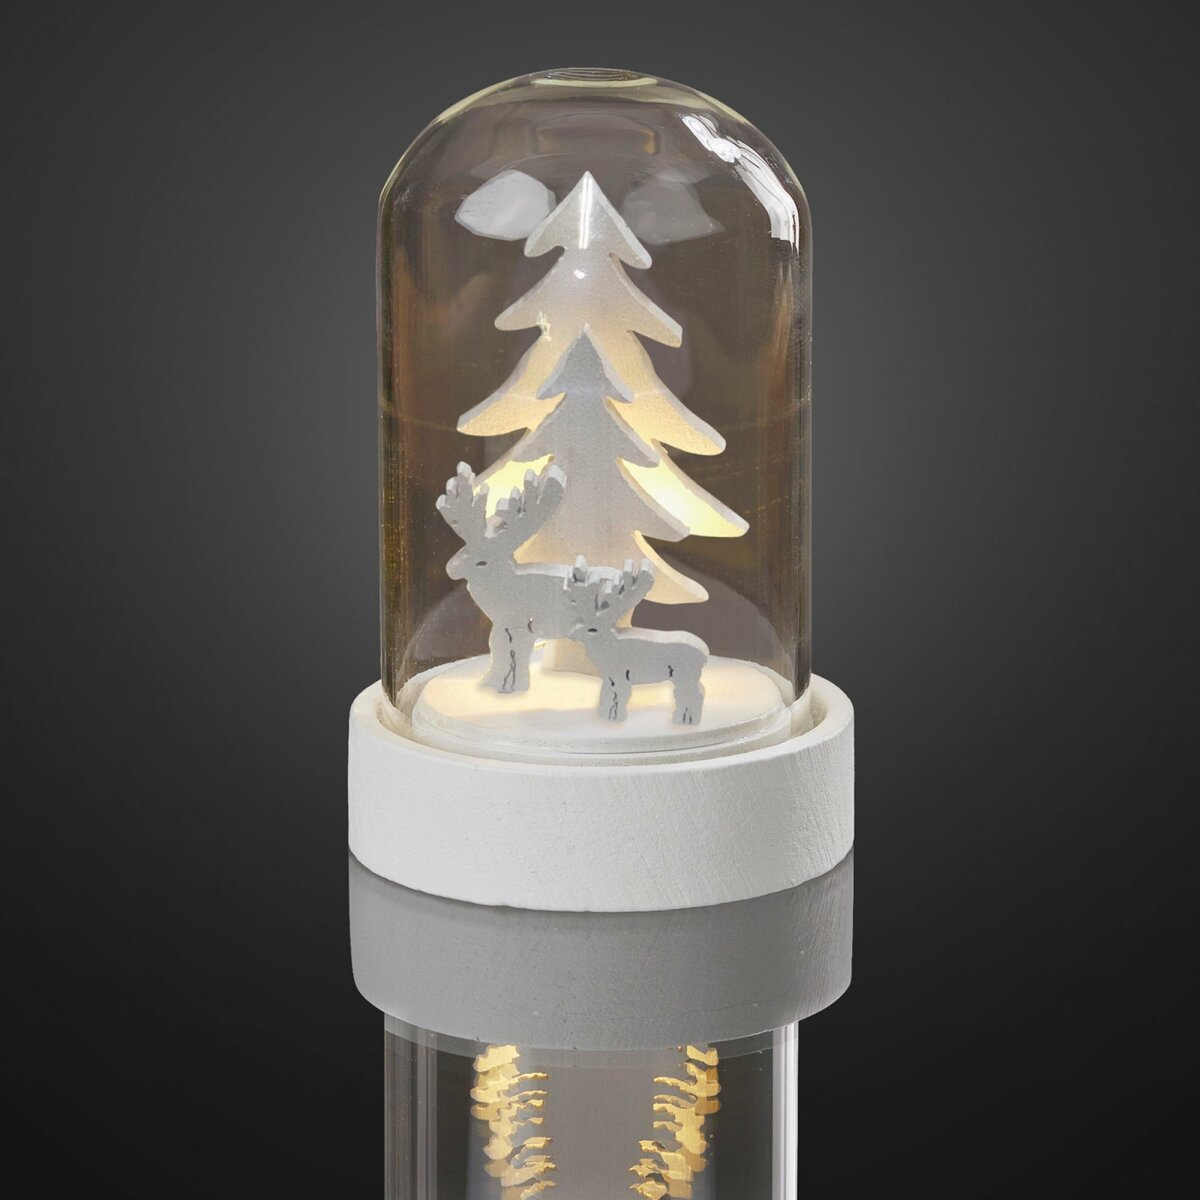 LED-Deko-Glocke mit Tannenbäumen und batt LEDs, warm-weiße Rentieren